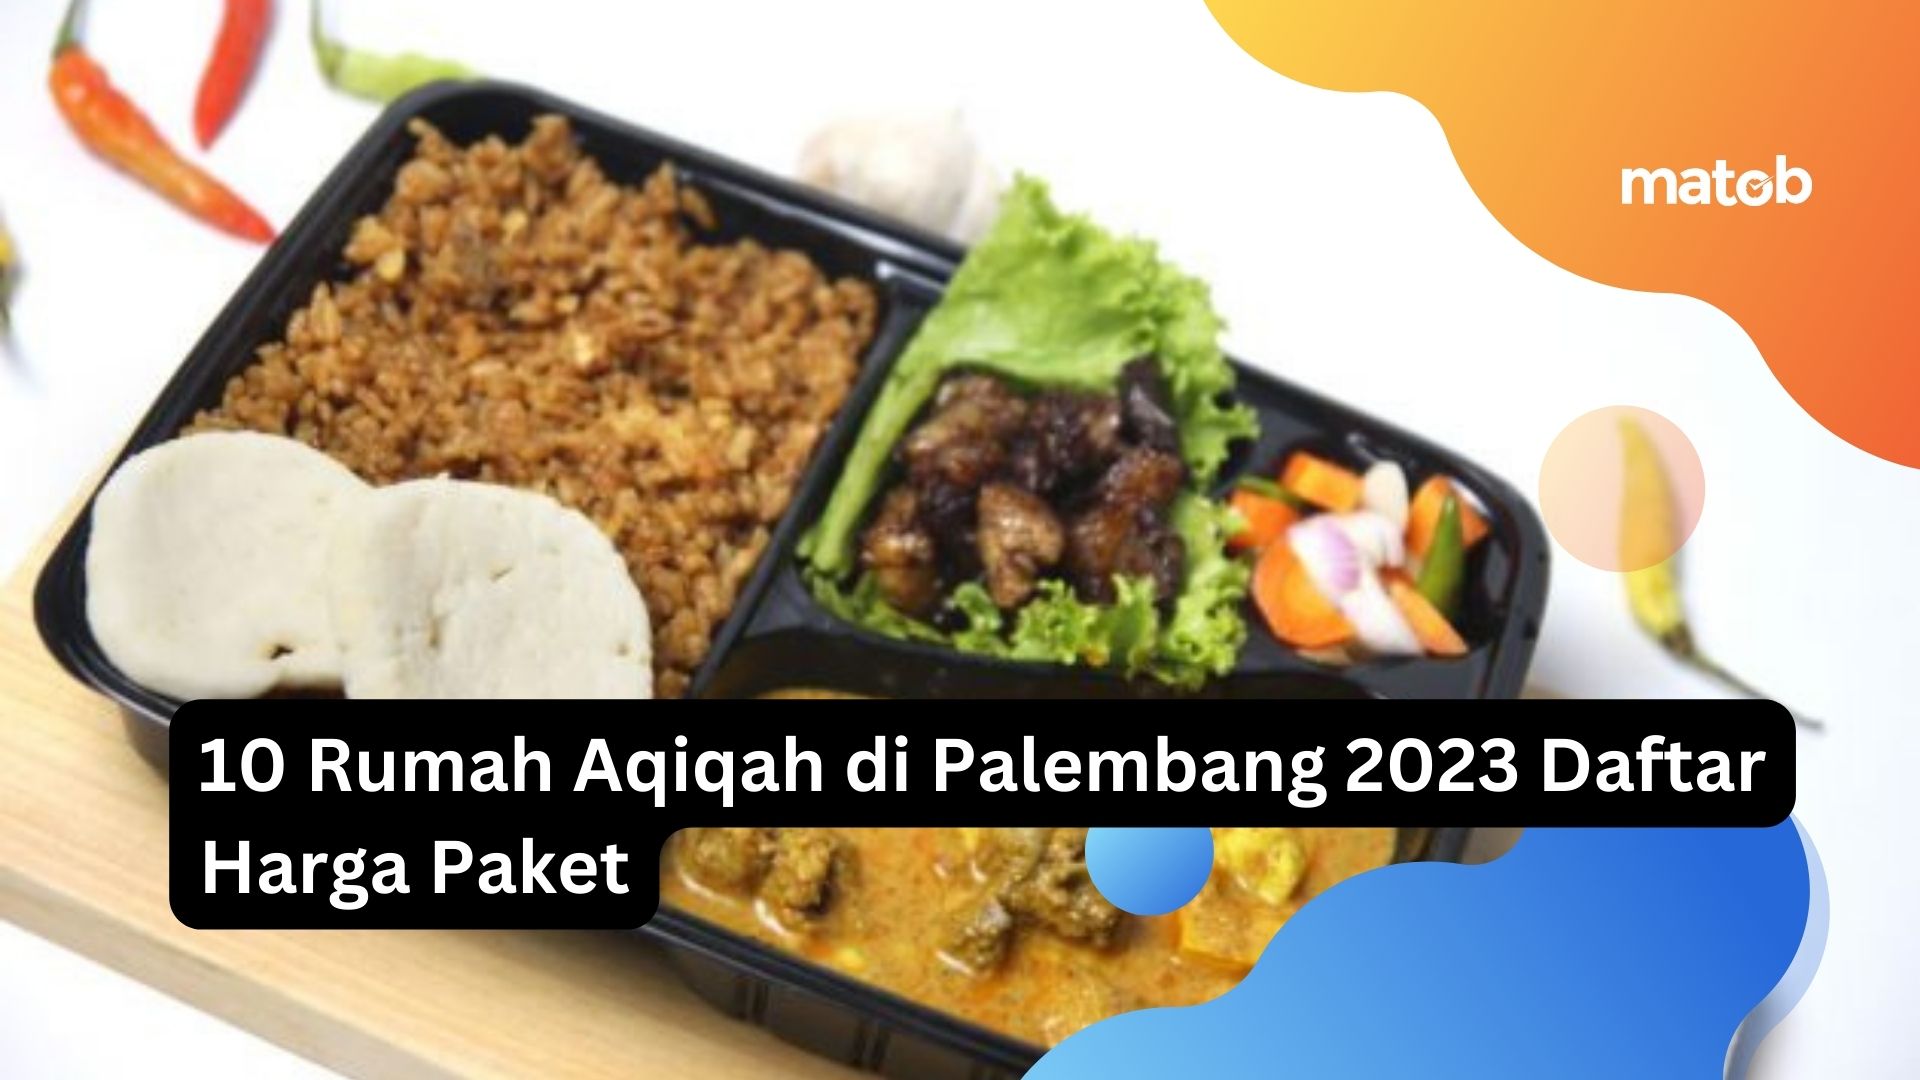 10 Rumah Aqiqah di Palembang 2023 Daftar Harga Paket